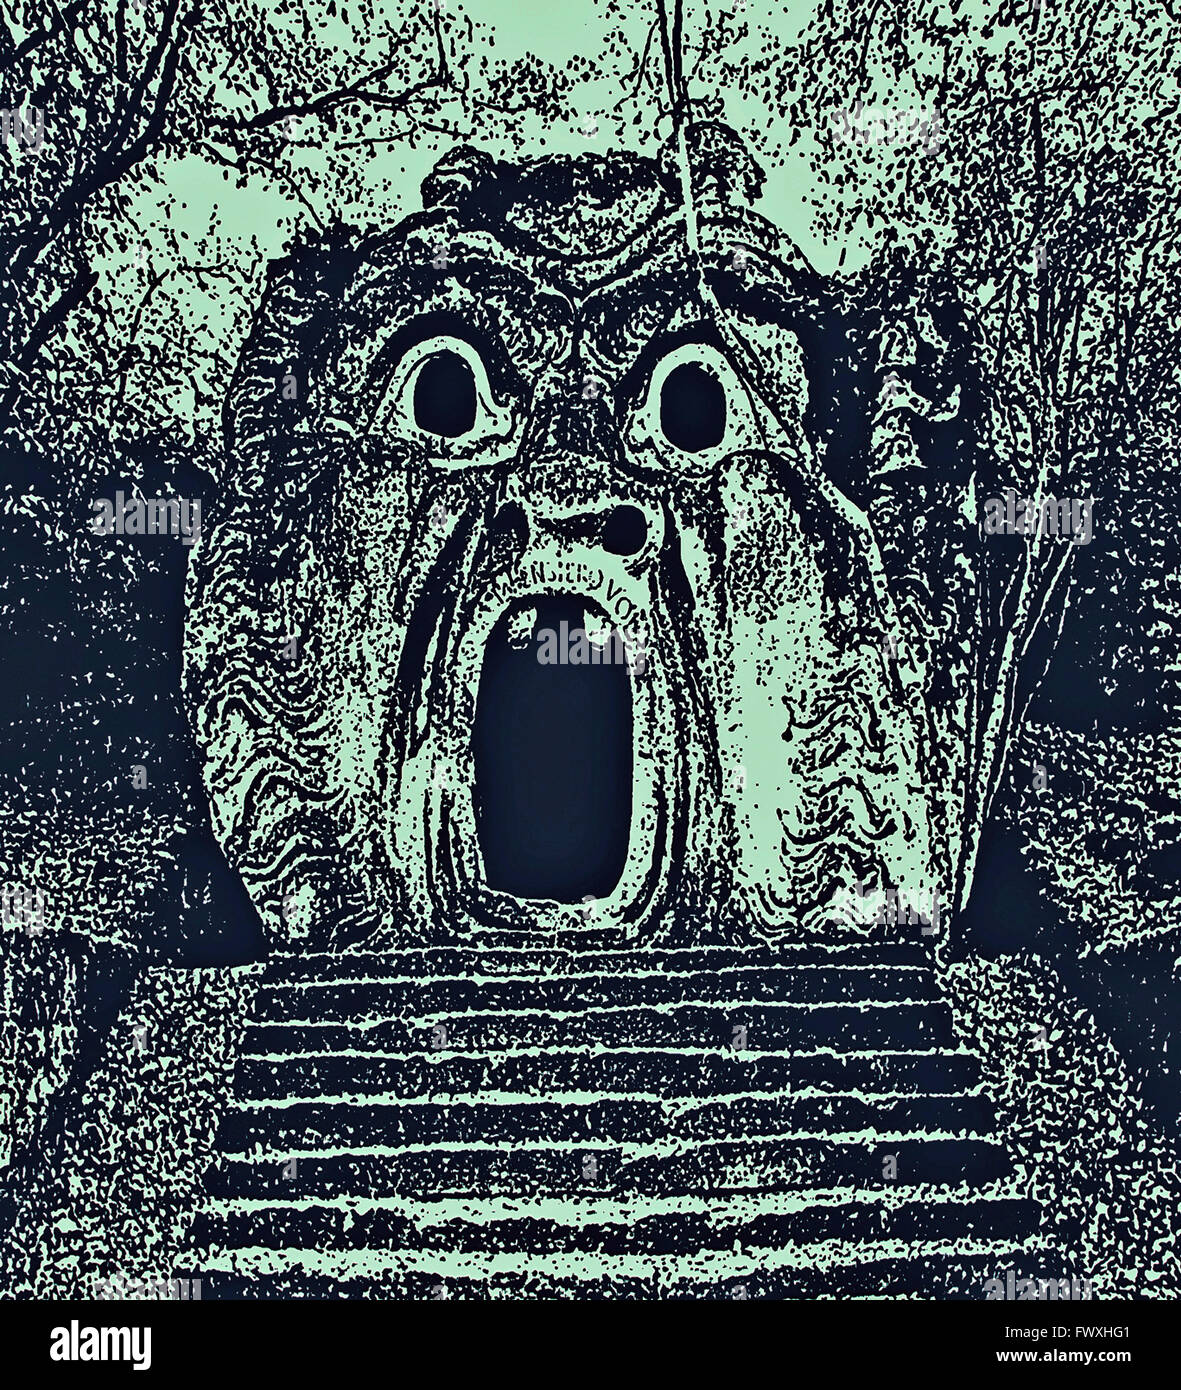 Fotografie der antiken Skulptur als rosenmüllershöhle, Darstellung der beängstigend Gesicht des Monsters. Bomarzo Gärten, Italien. Digital verbesserte Fotografie. Stockfoto